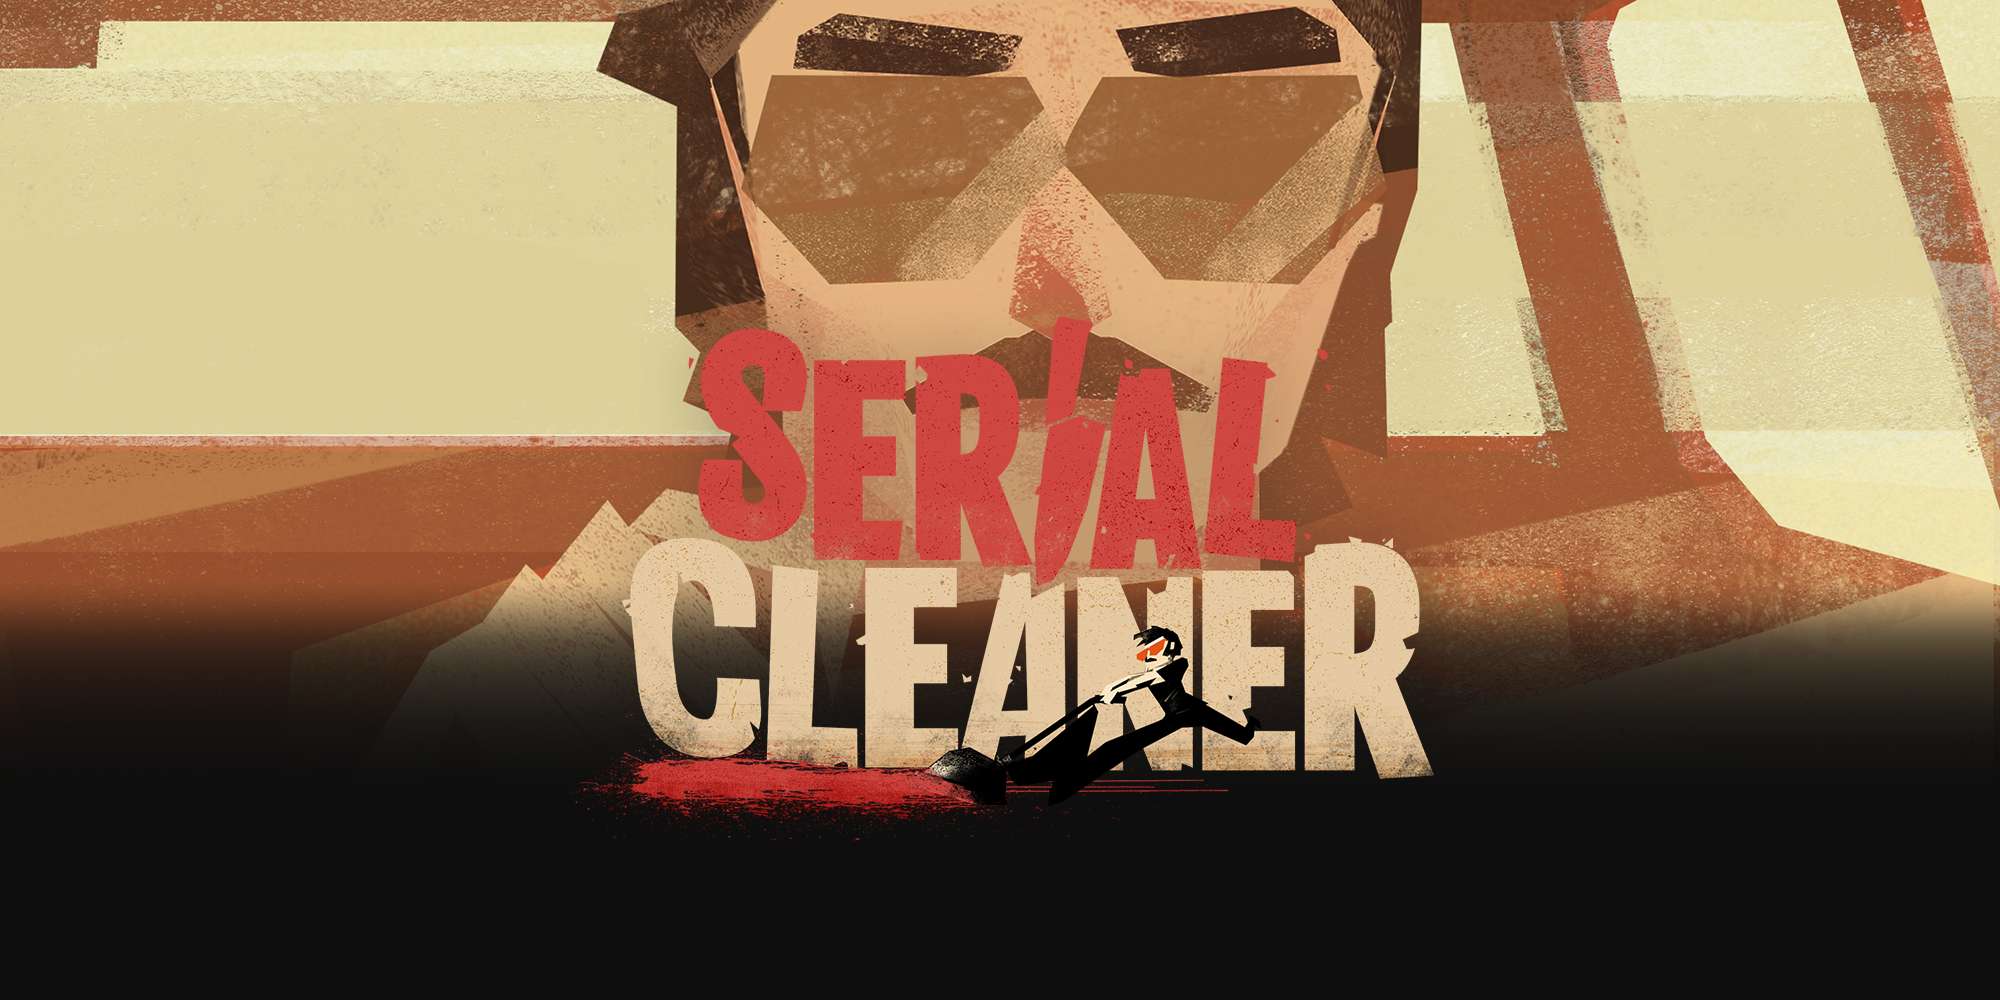 serial cleaner